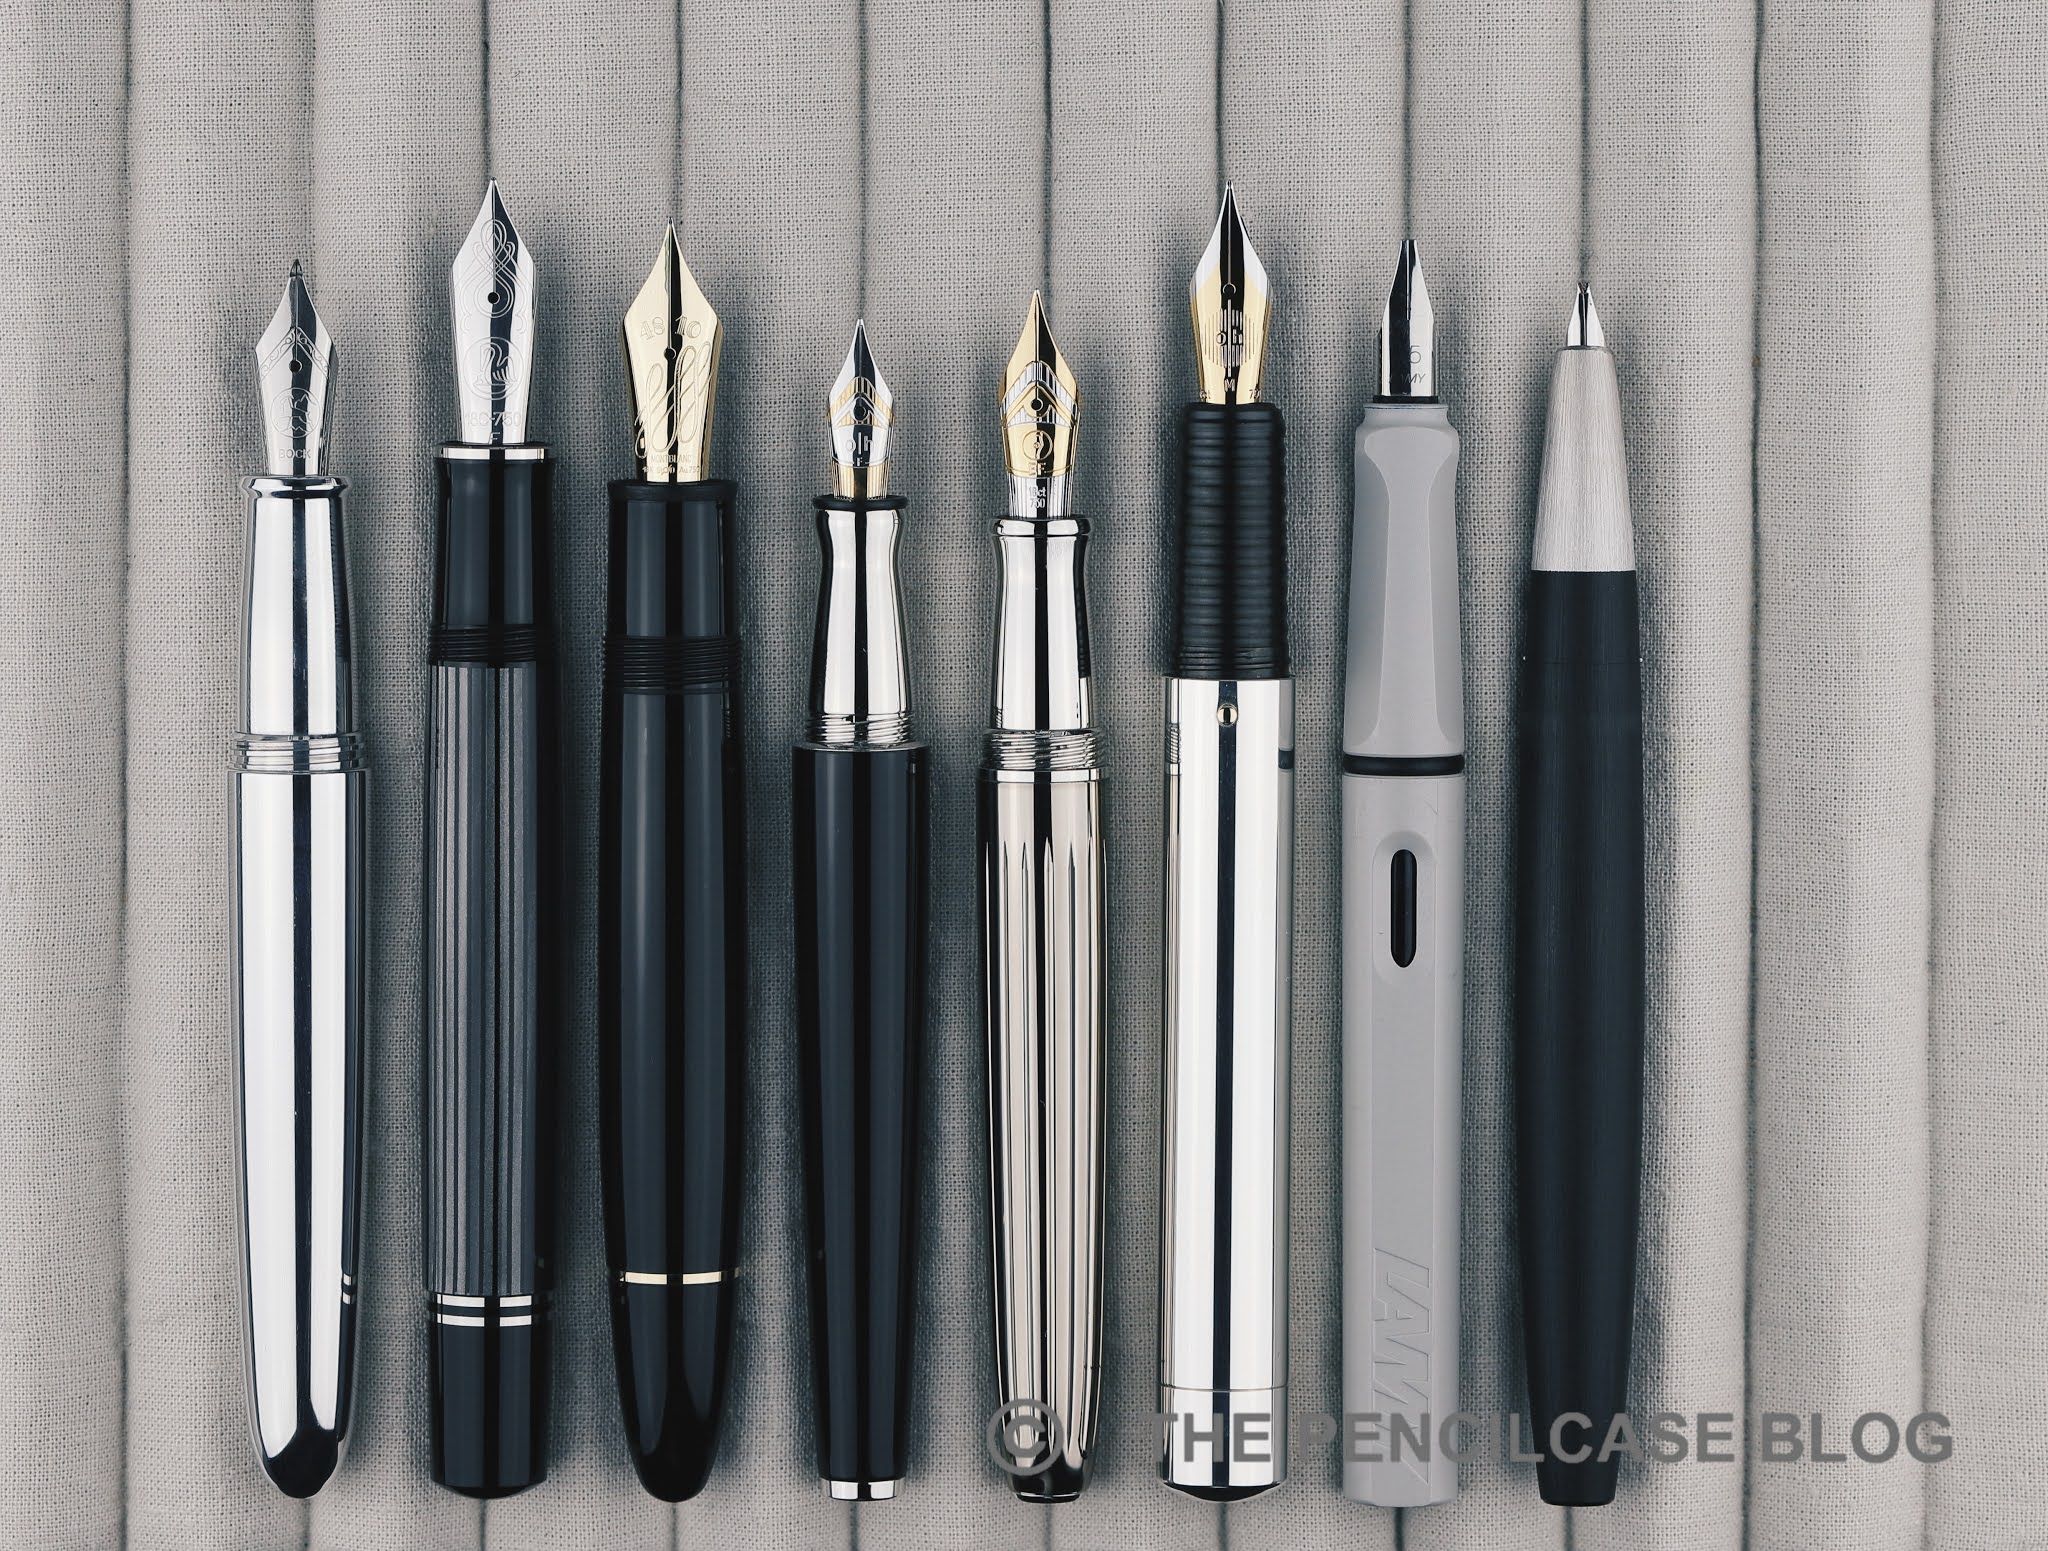 REVIEW: OTTO HUTT DESIGN C FOUNTAIN PEN | The Pencilcase Blog ...